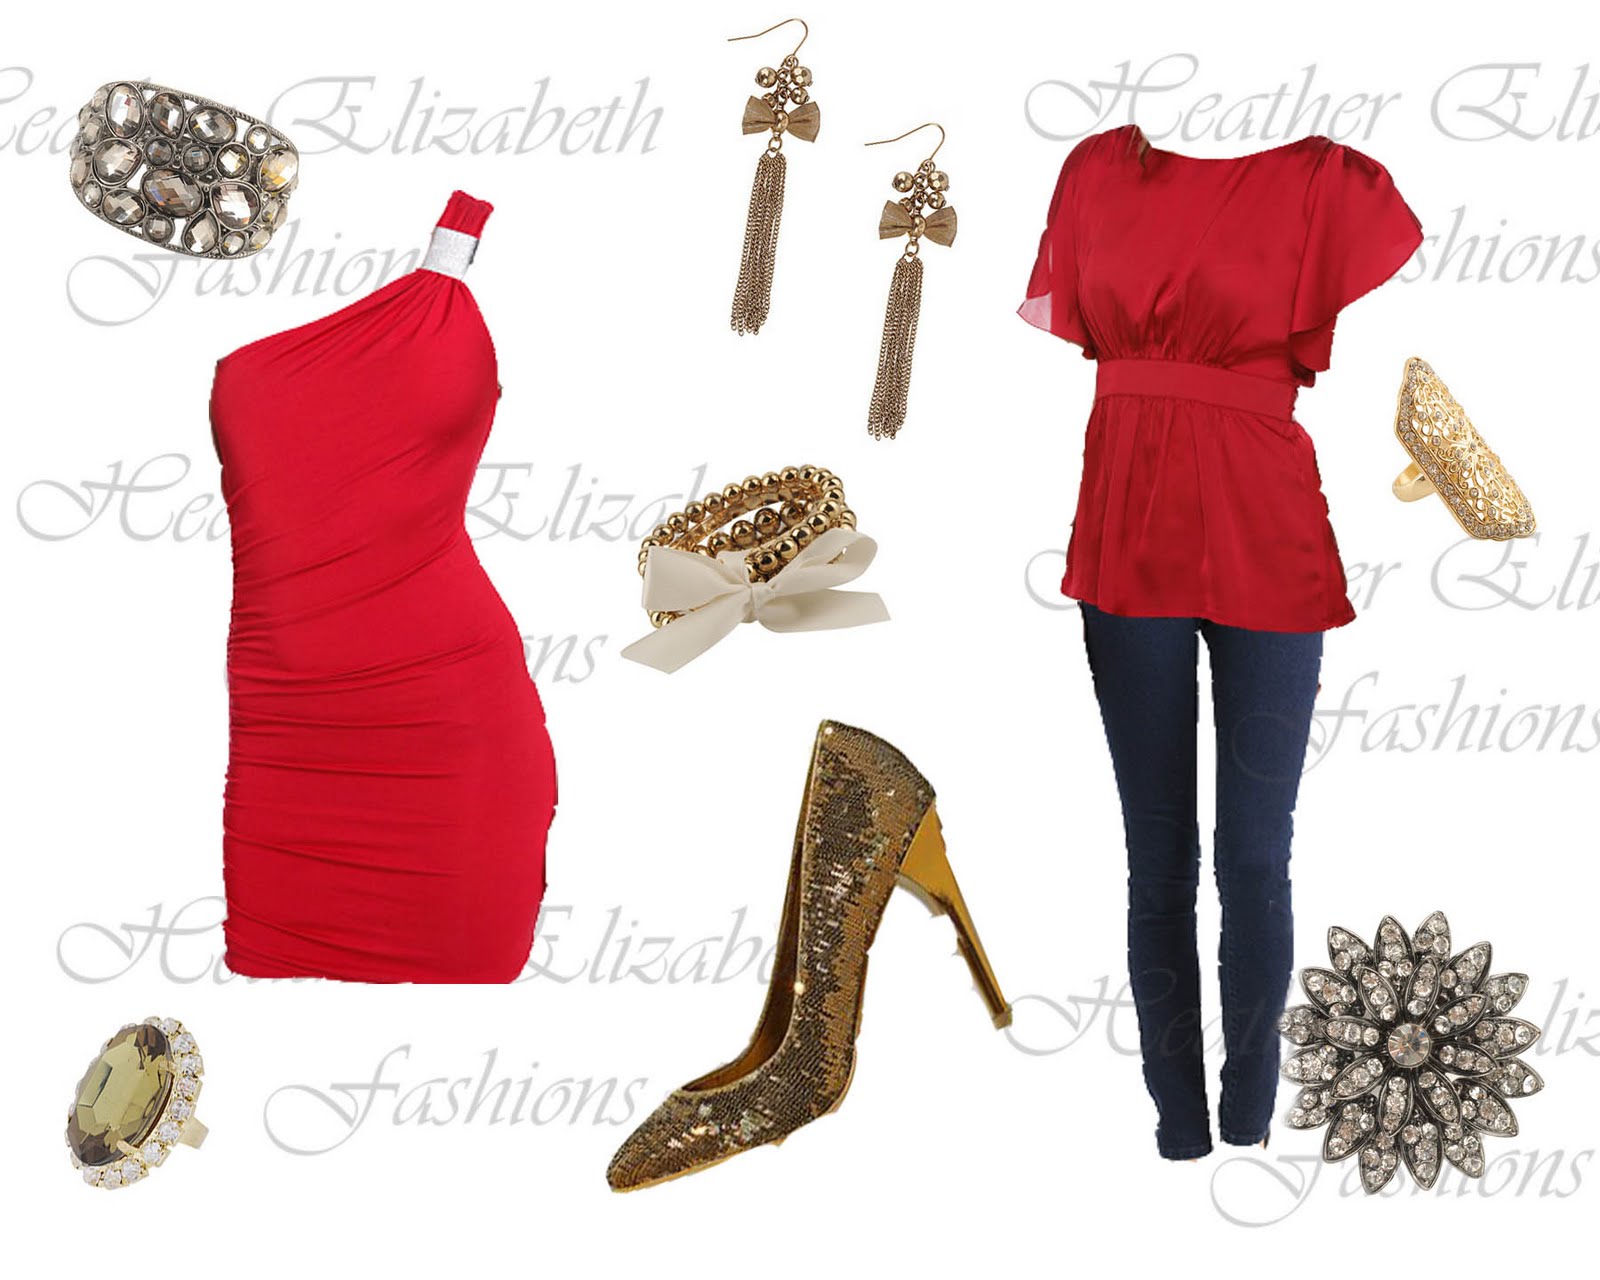 Elizabeth+fashions